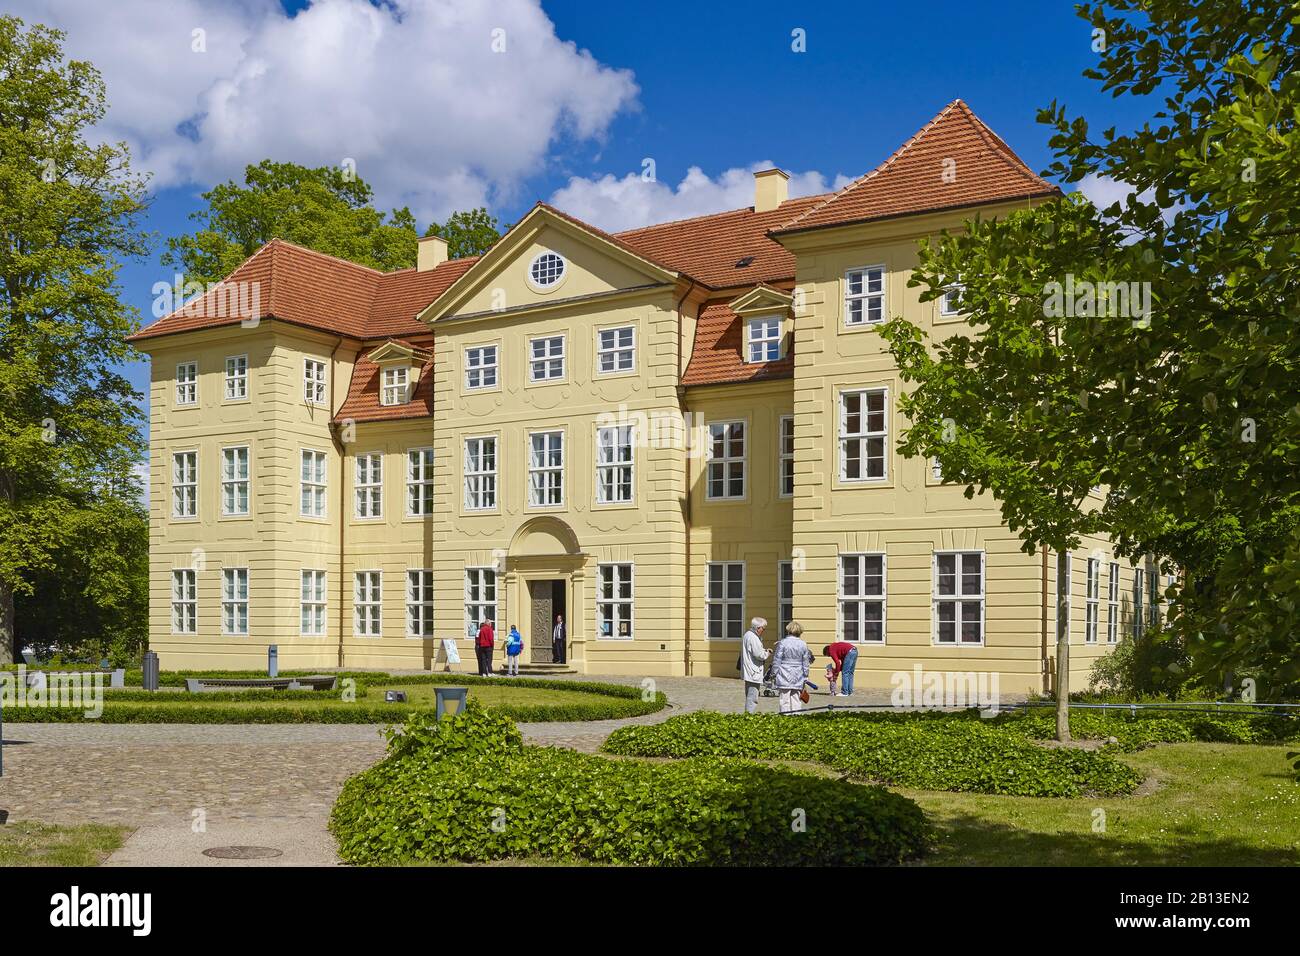 Château de Mirow sur l'île du Château à Mirow,Mecklenburg-Vorpommern,Allemagne <br> Château de Mirow sur l'île du Château à Mirow,Mecklenburg-Ouest Pomerania,Allemagne Banque D'Images